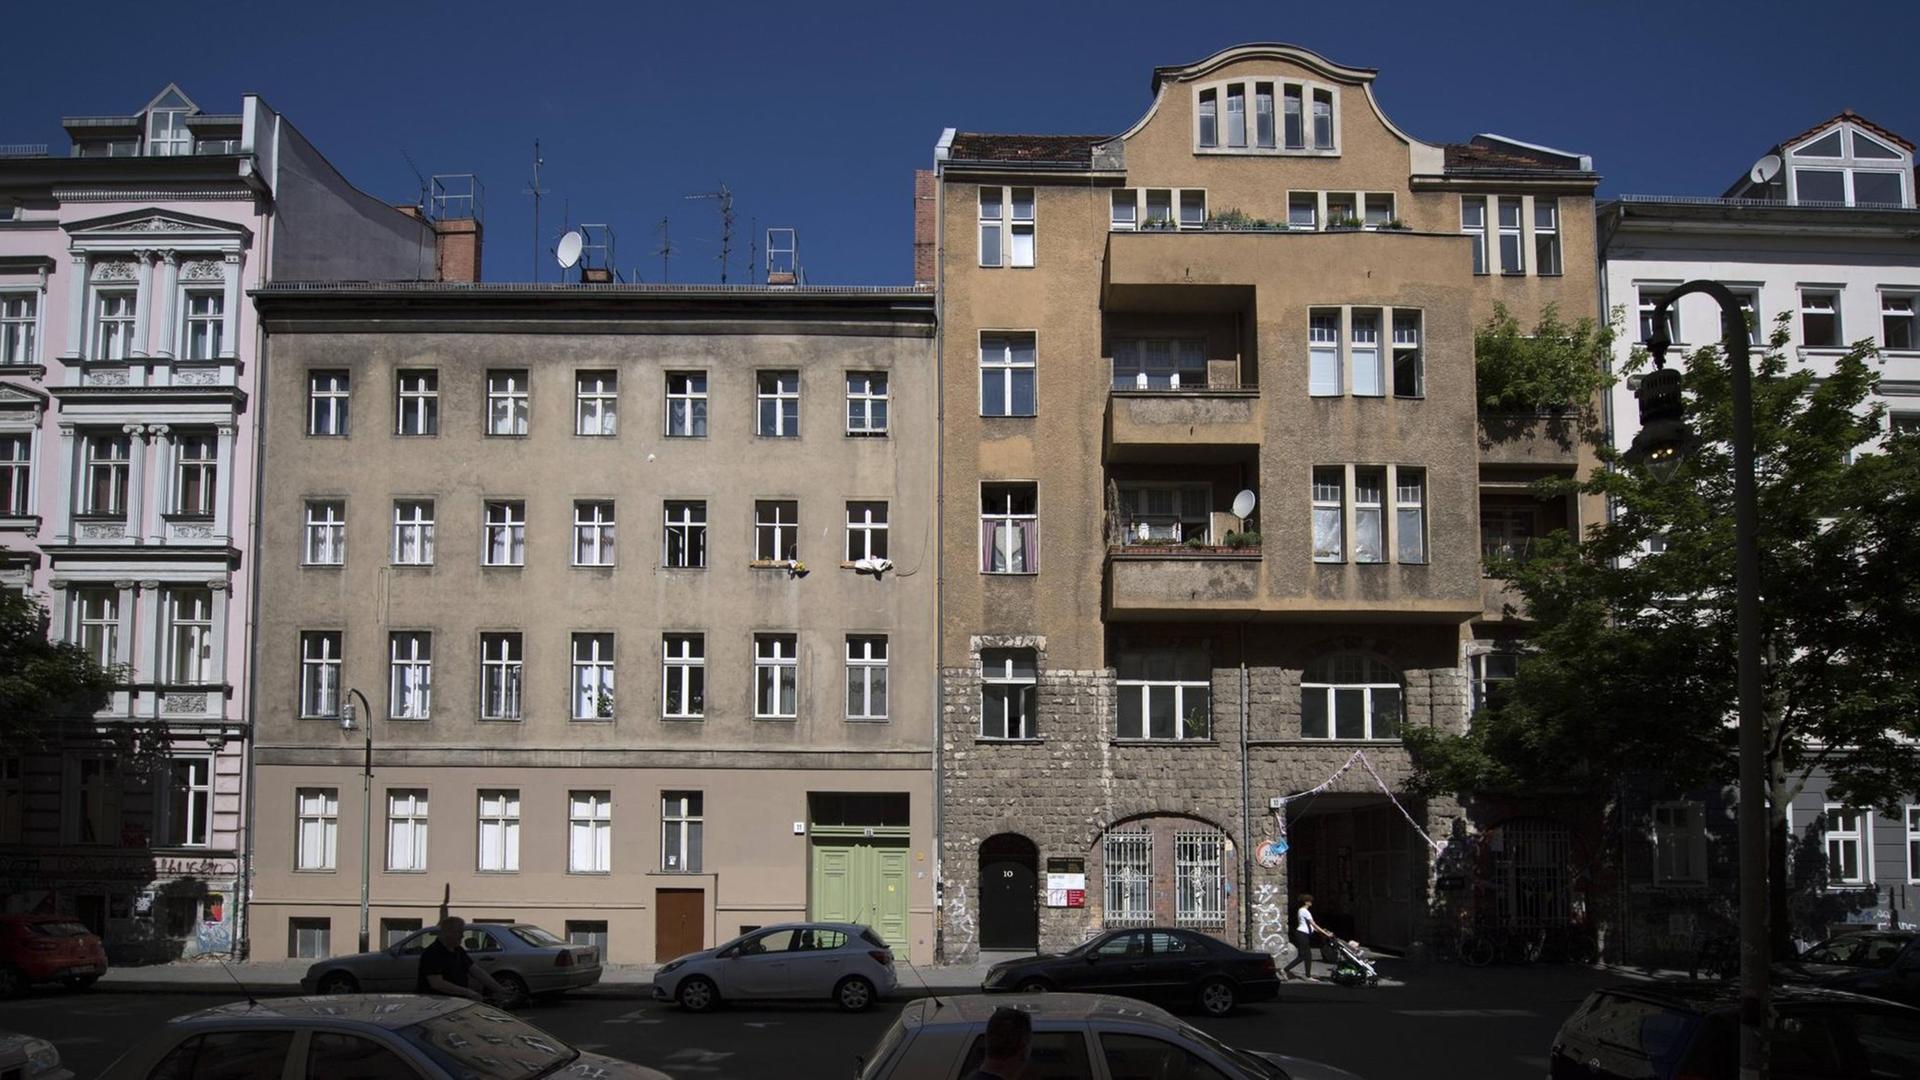 Das Haus in der Lausitzer Straße 10 und 11 in Kreuzberg, das durch die Initiative "Lause bleibt" bekannt geworden ist.